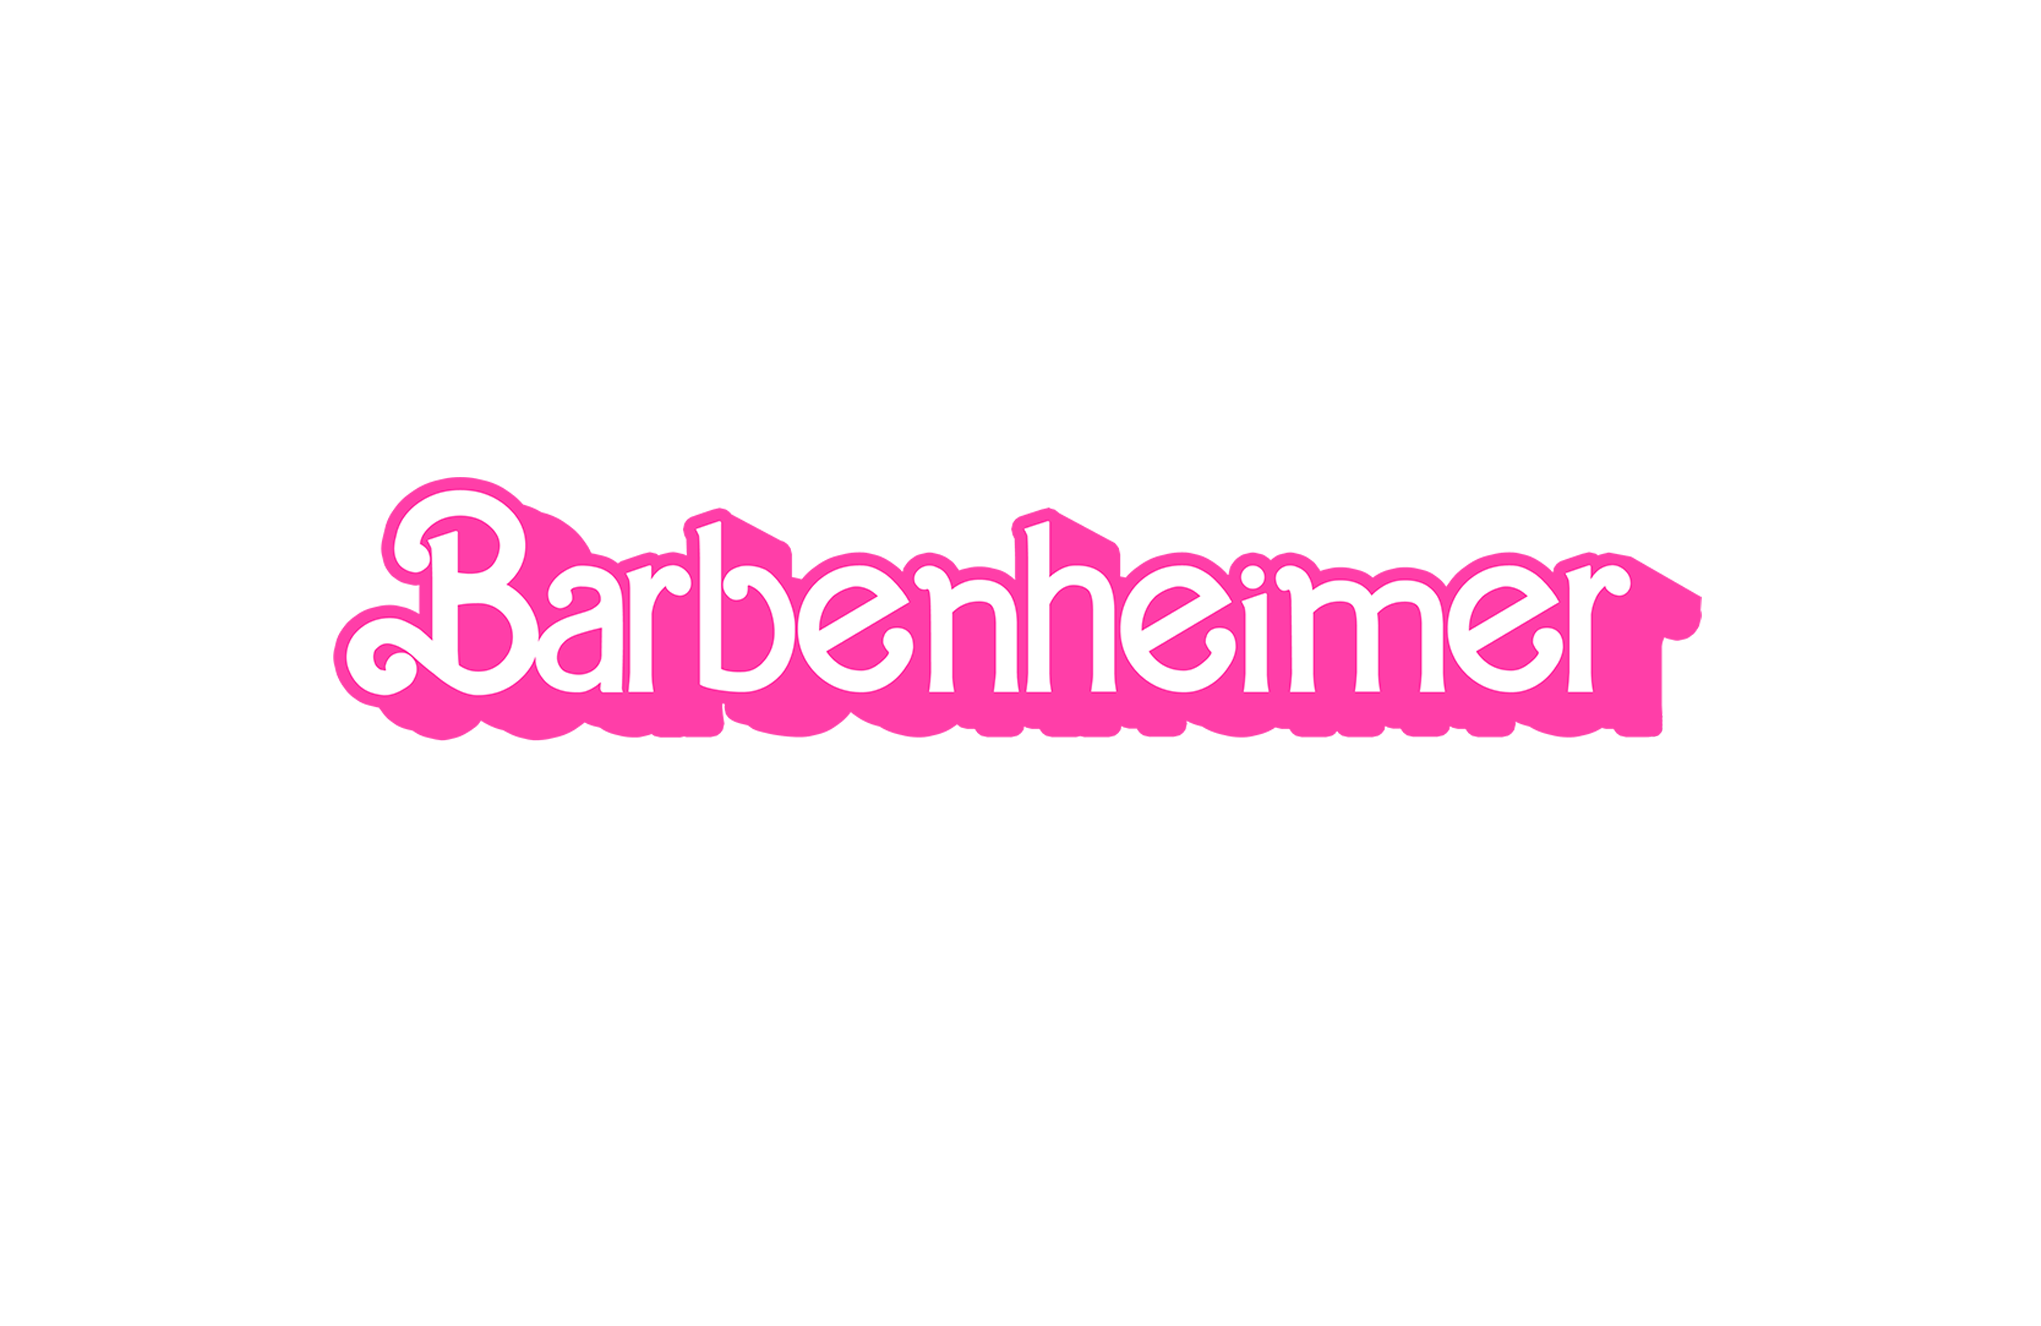 Barbenheimer - NEWEST LOGO (2)